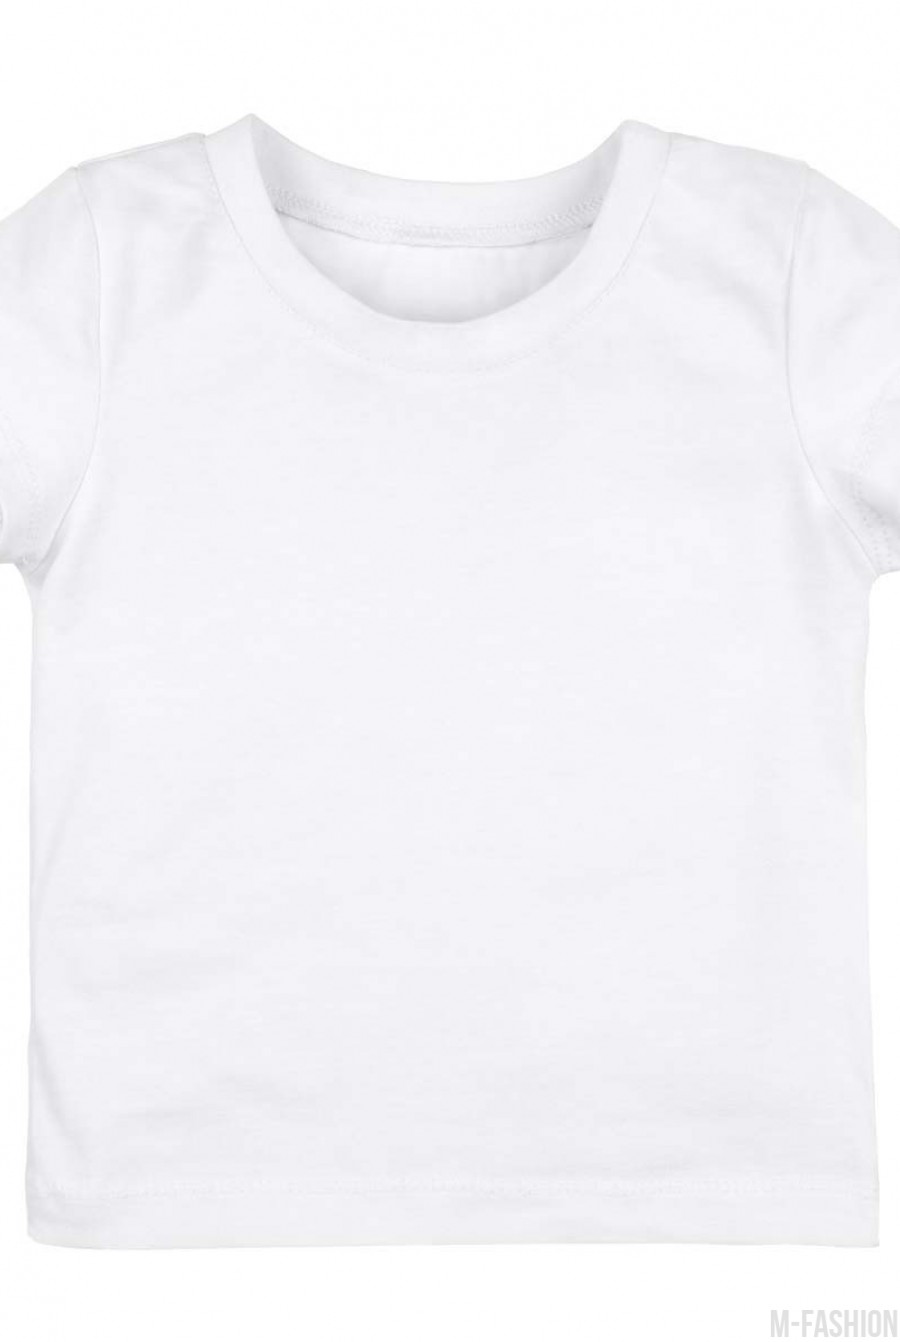 Котоновая белая футболка с короткими рукавами - Фото 1